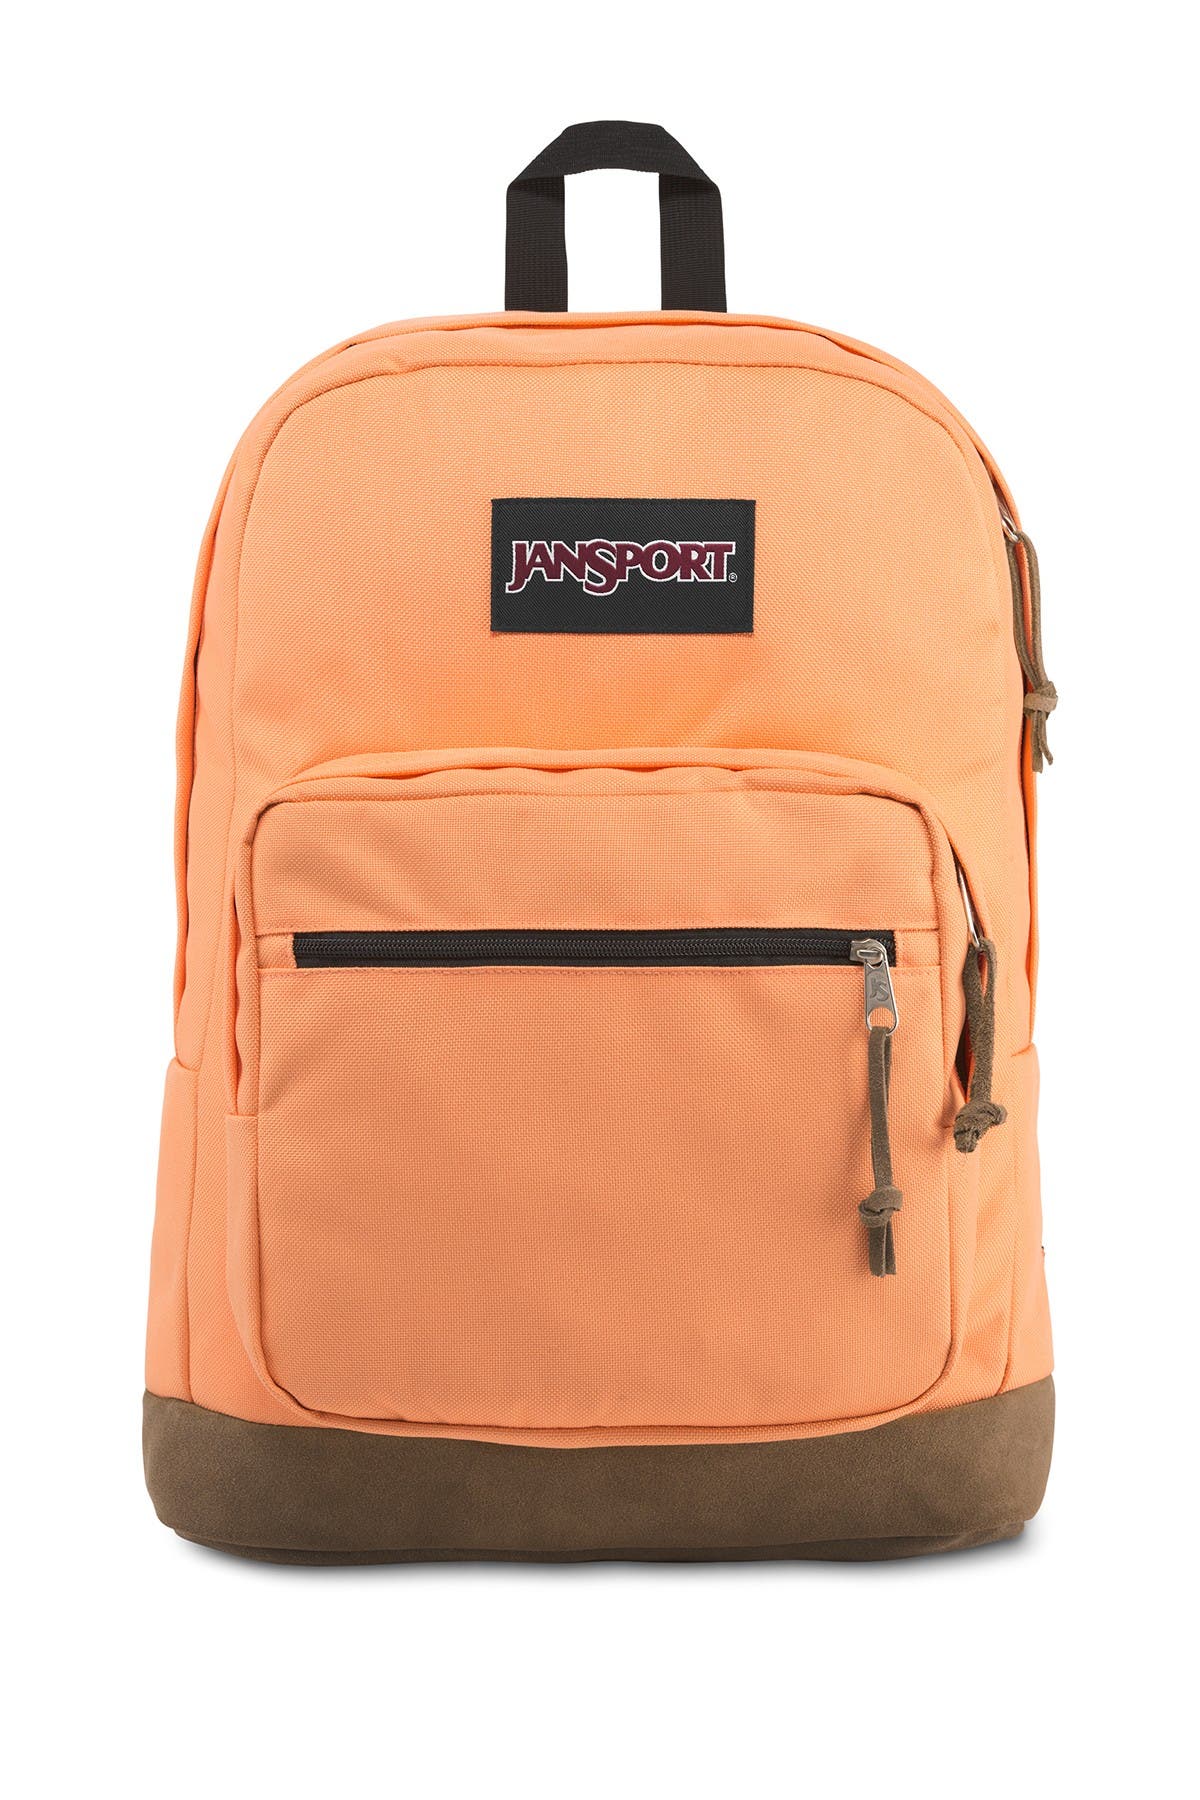 jansport backpack nordstrom